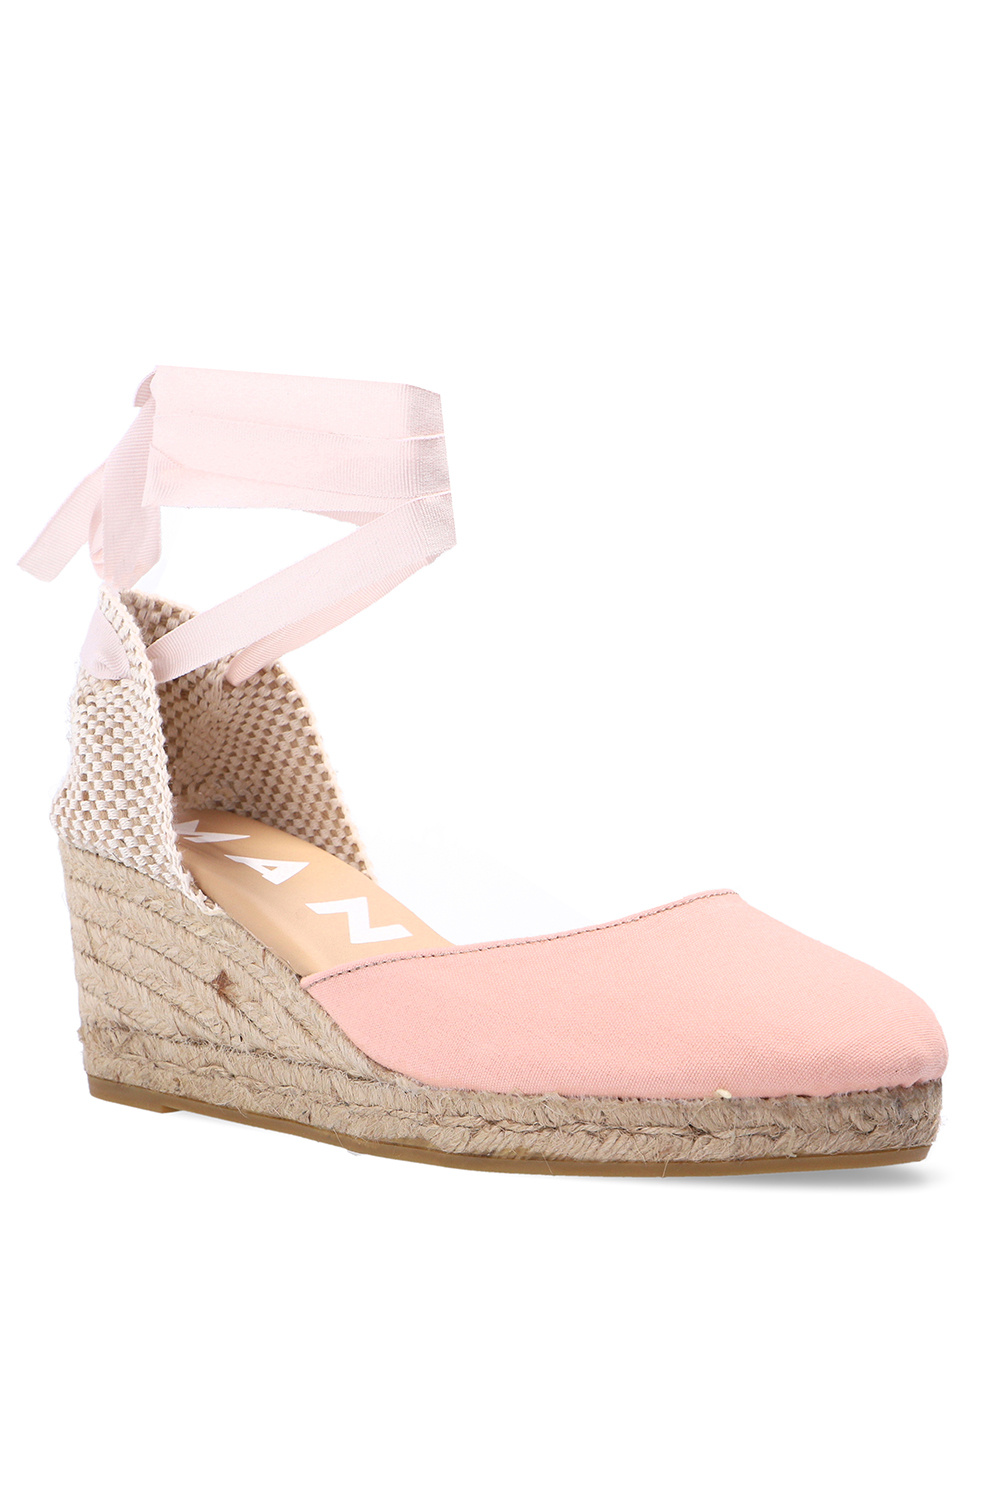 Manebi ‘Hamptons’ wedge shoes